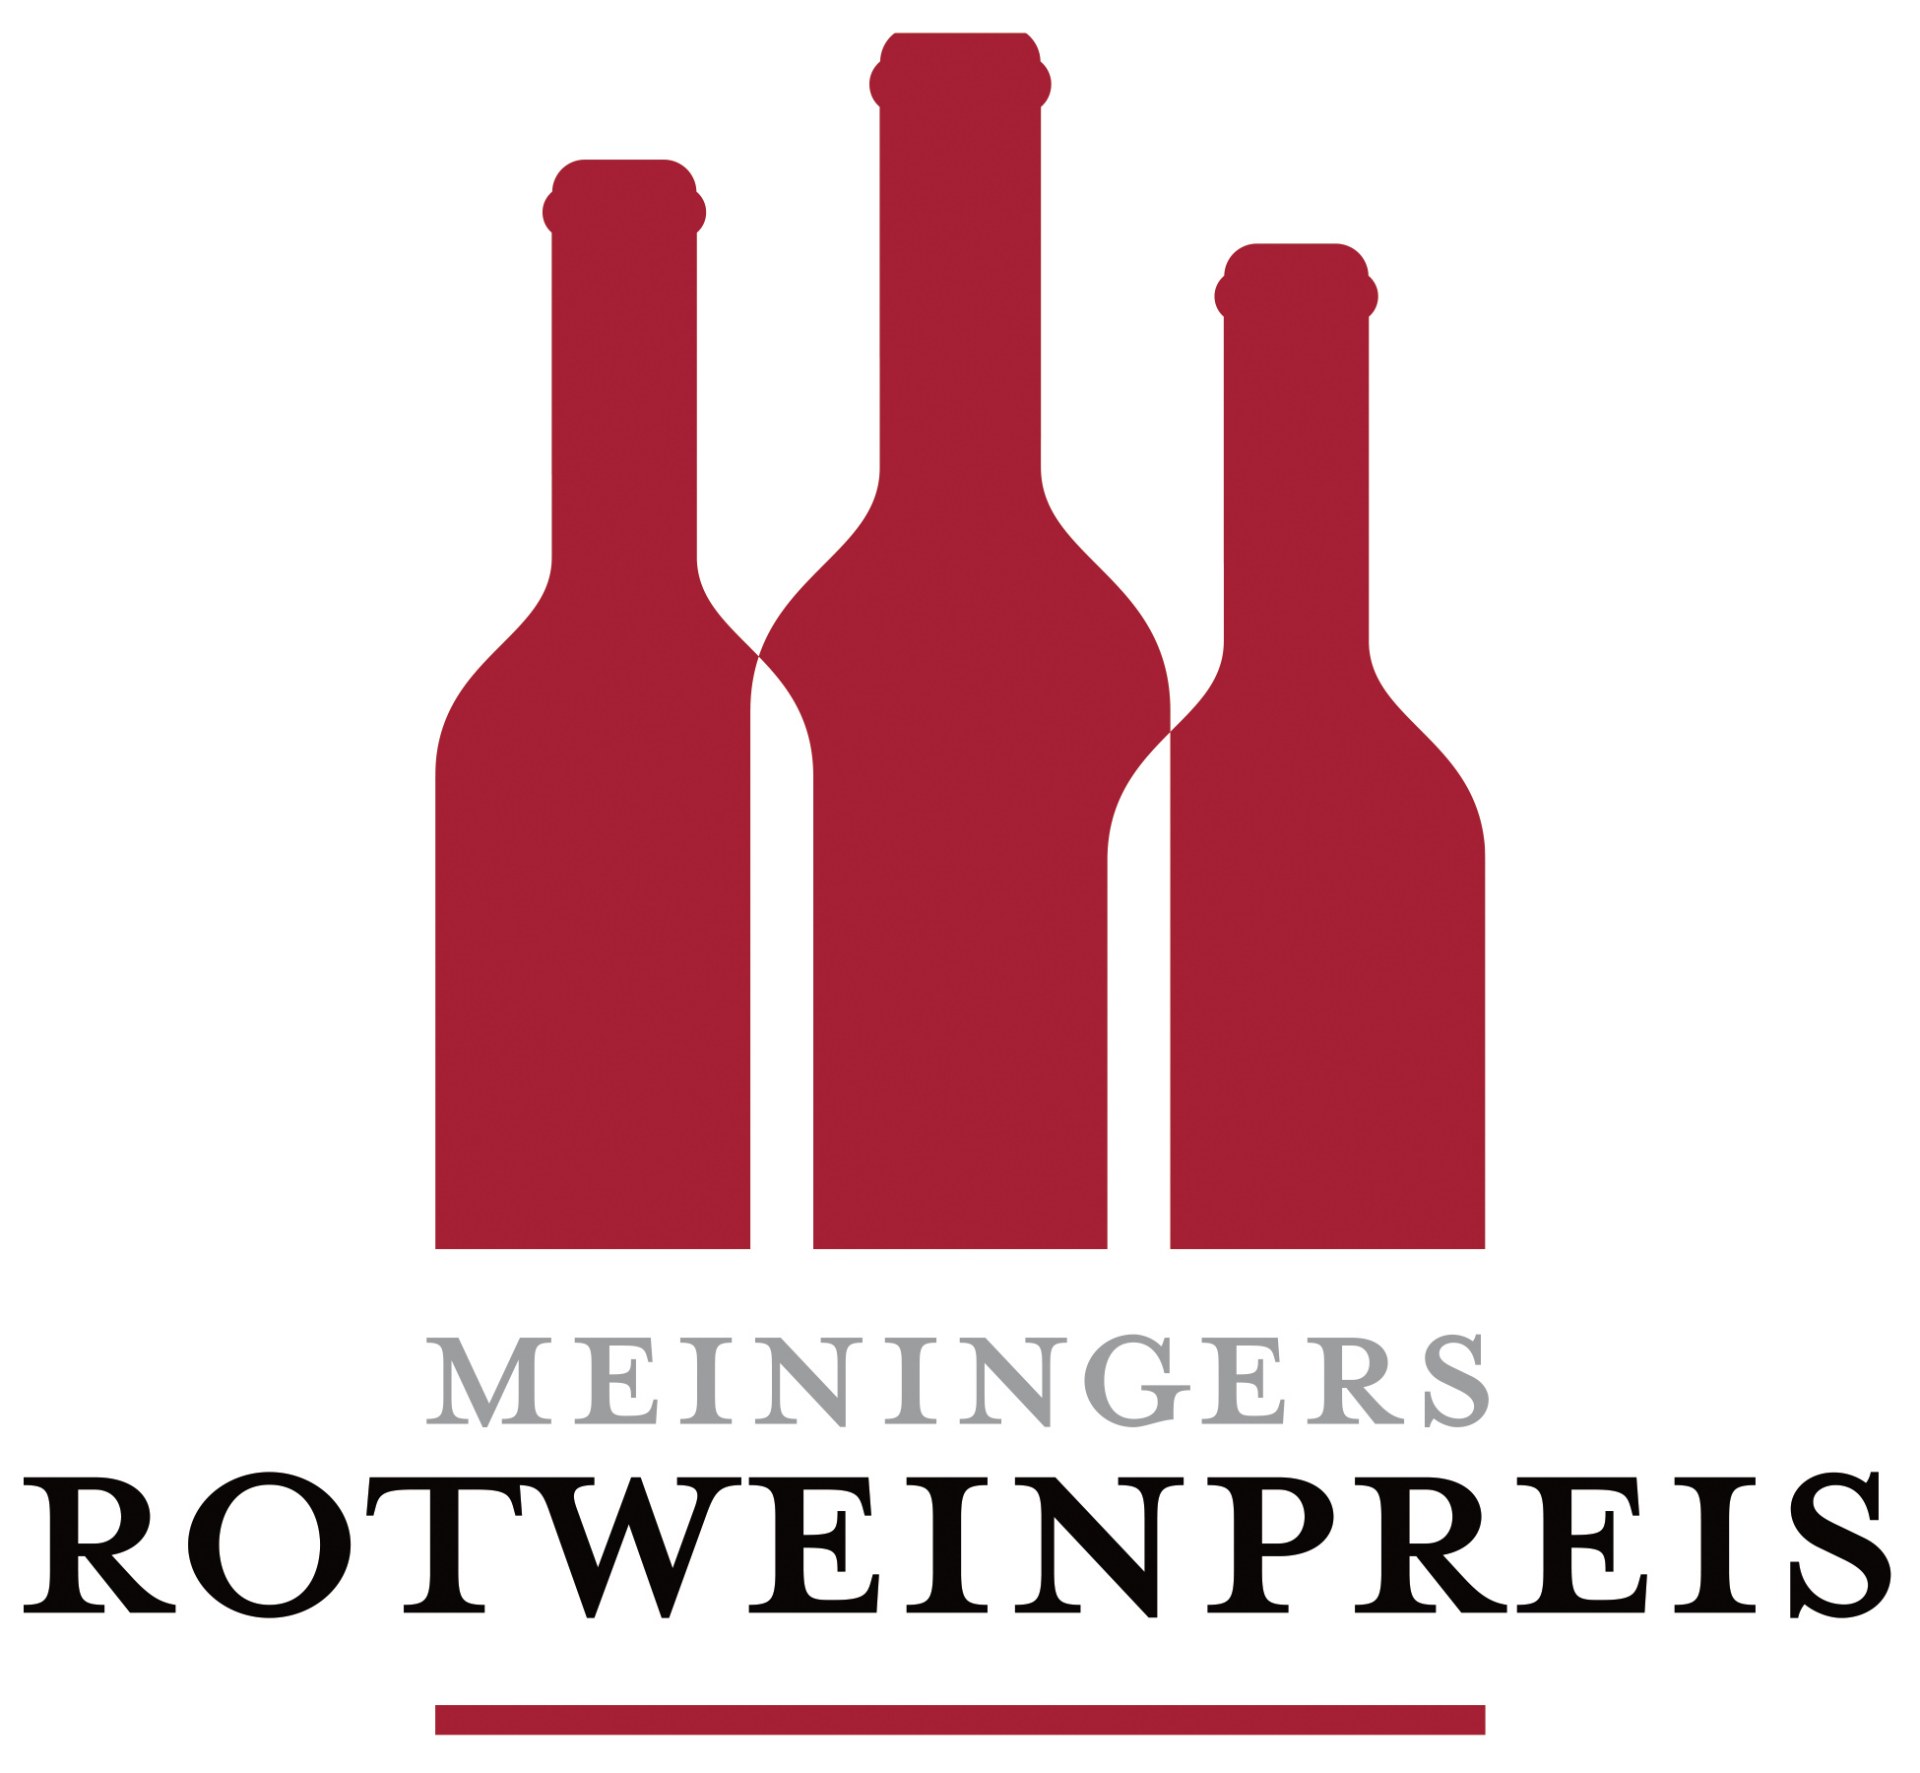 Bild-Auszeichnung: 3. Platz beim Meininger Rotweinpreis in der Kategorie Sortenvielfalt 